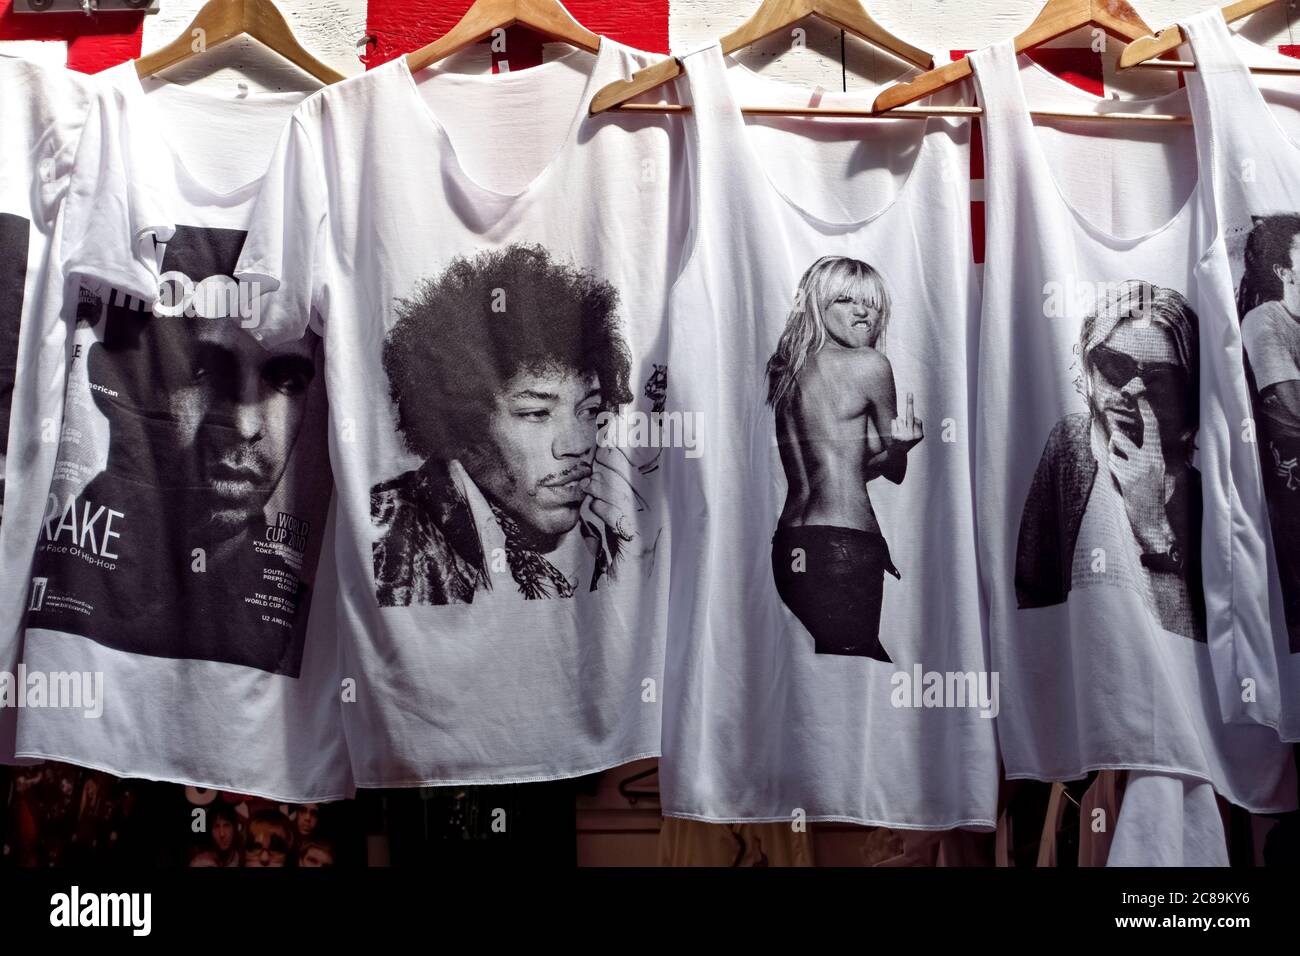 Camisetas blancas con estrellas de rock impresas, en exhibición para la venta. Moda ropa informal. Primer plano, detalle. Foto de stock